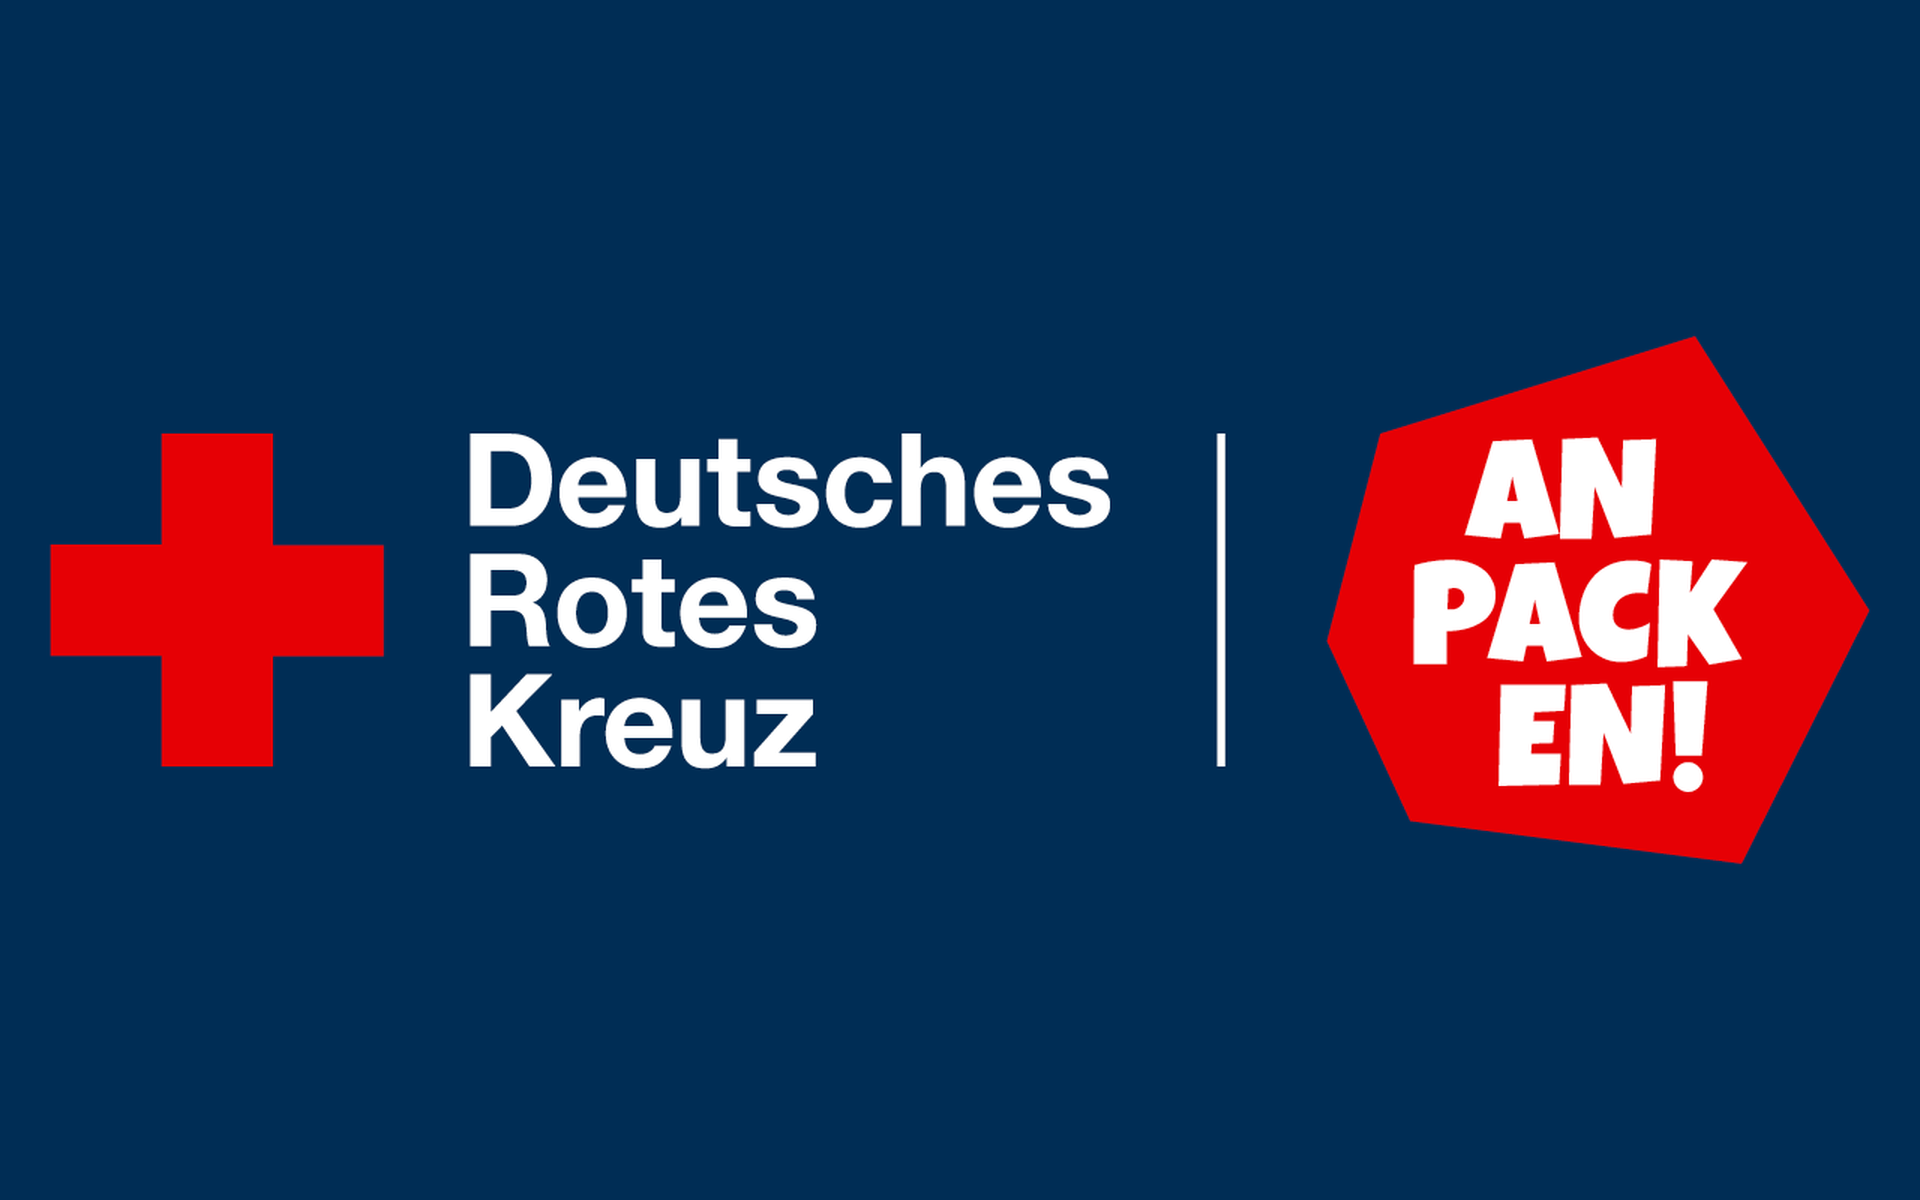 Deutsches Rotes Kreuz - Anpacken!